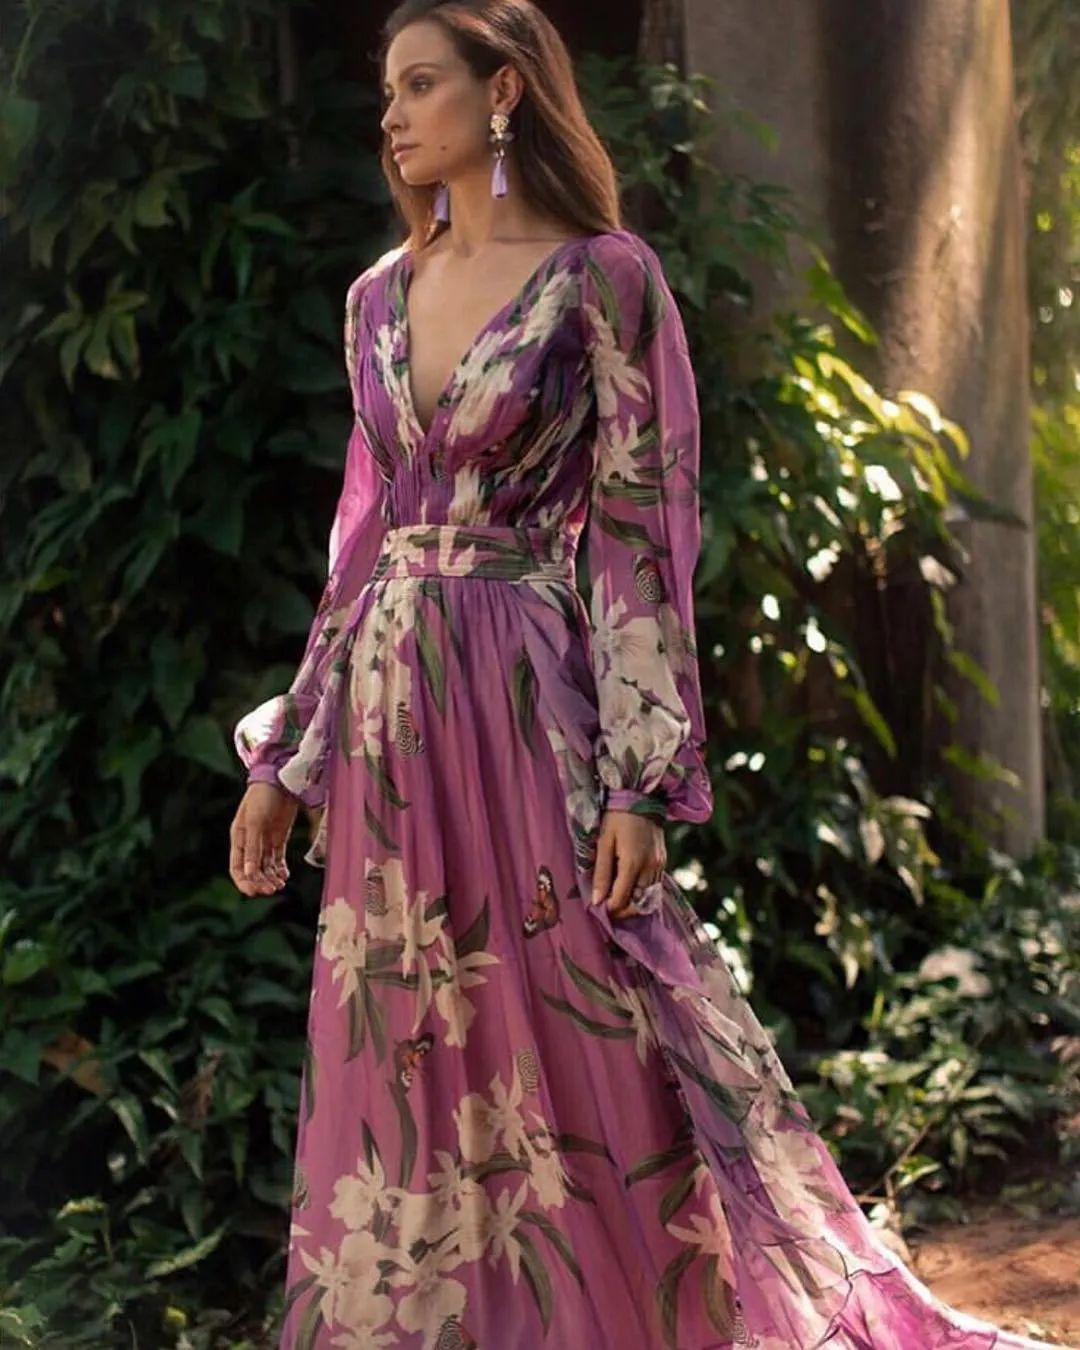 Осенние женские платья мода богемный цветочный напечатан V шеи с длинным рукавом плиссированные шифоновые платья оптом бесплатный корабль Z4 вскользь